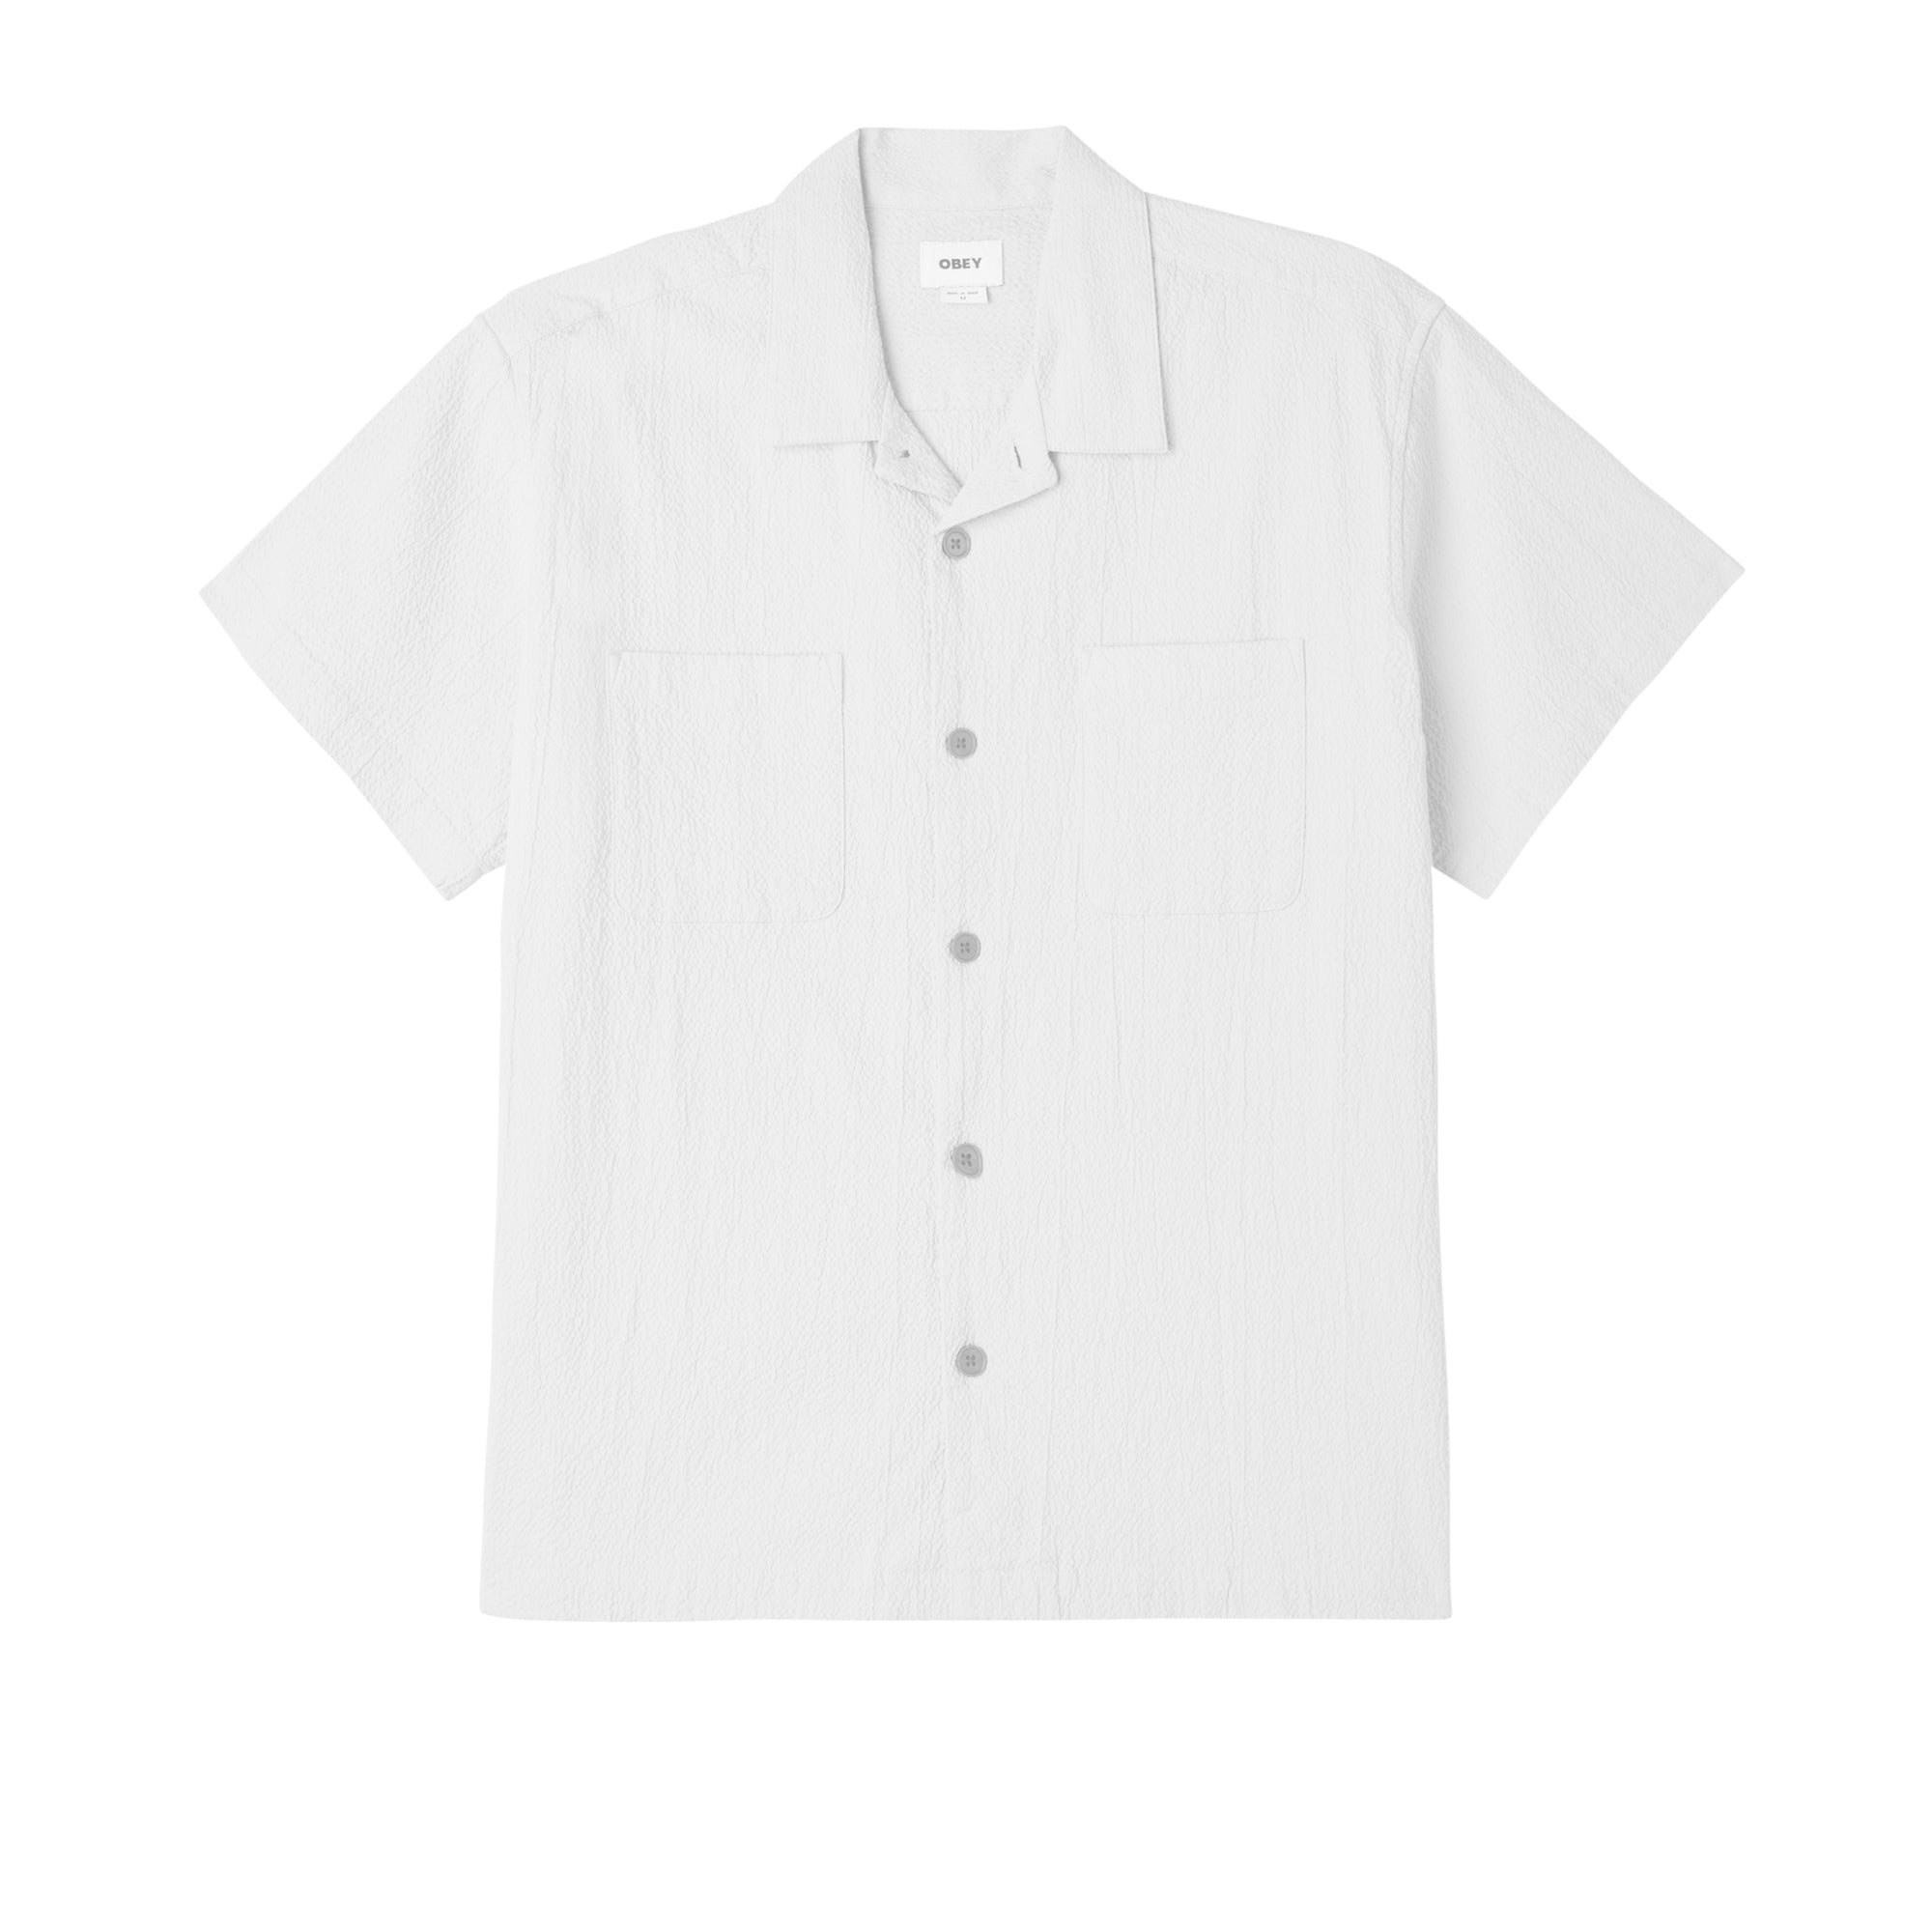 Obey Sunrise Shirt - White